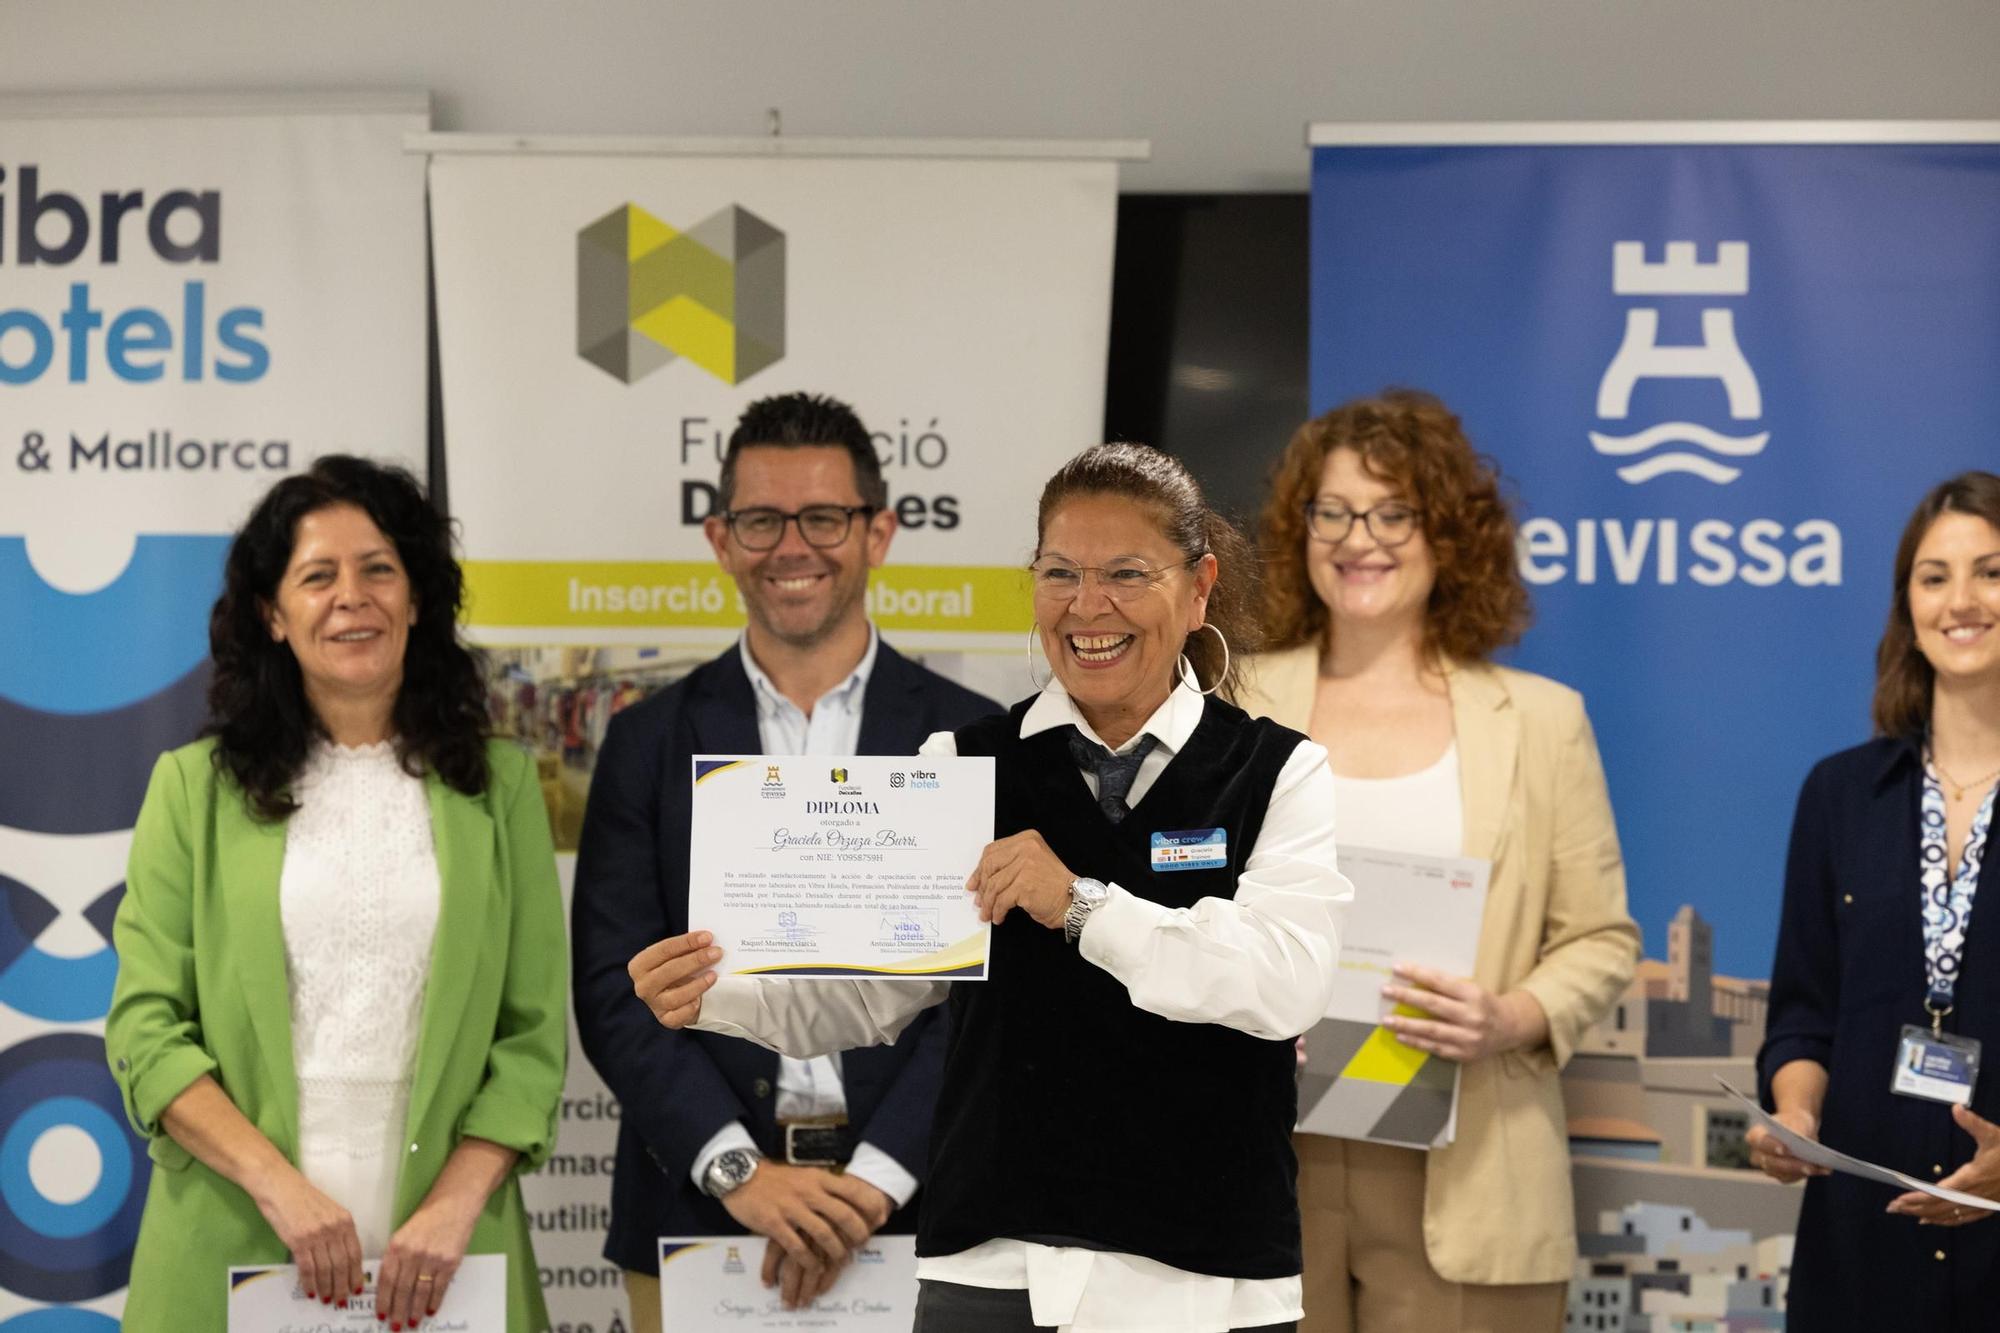 Entrega de diplomas de la Fundació Deixalles en Ibiza